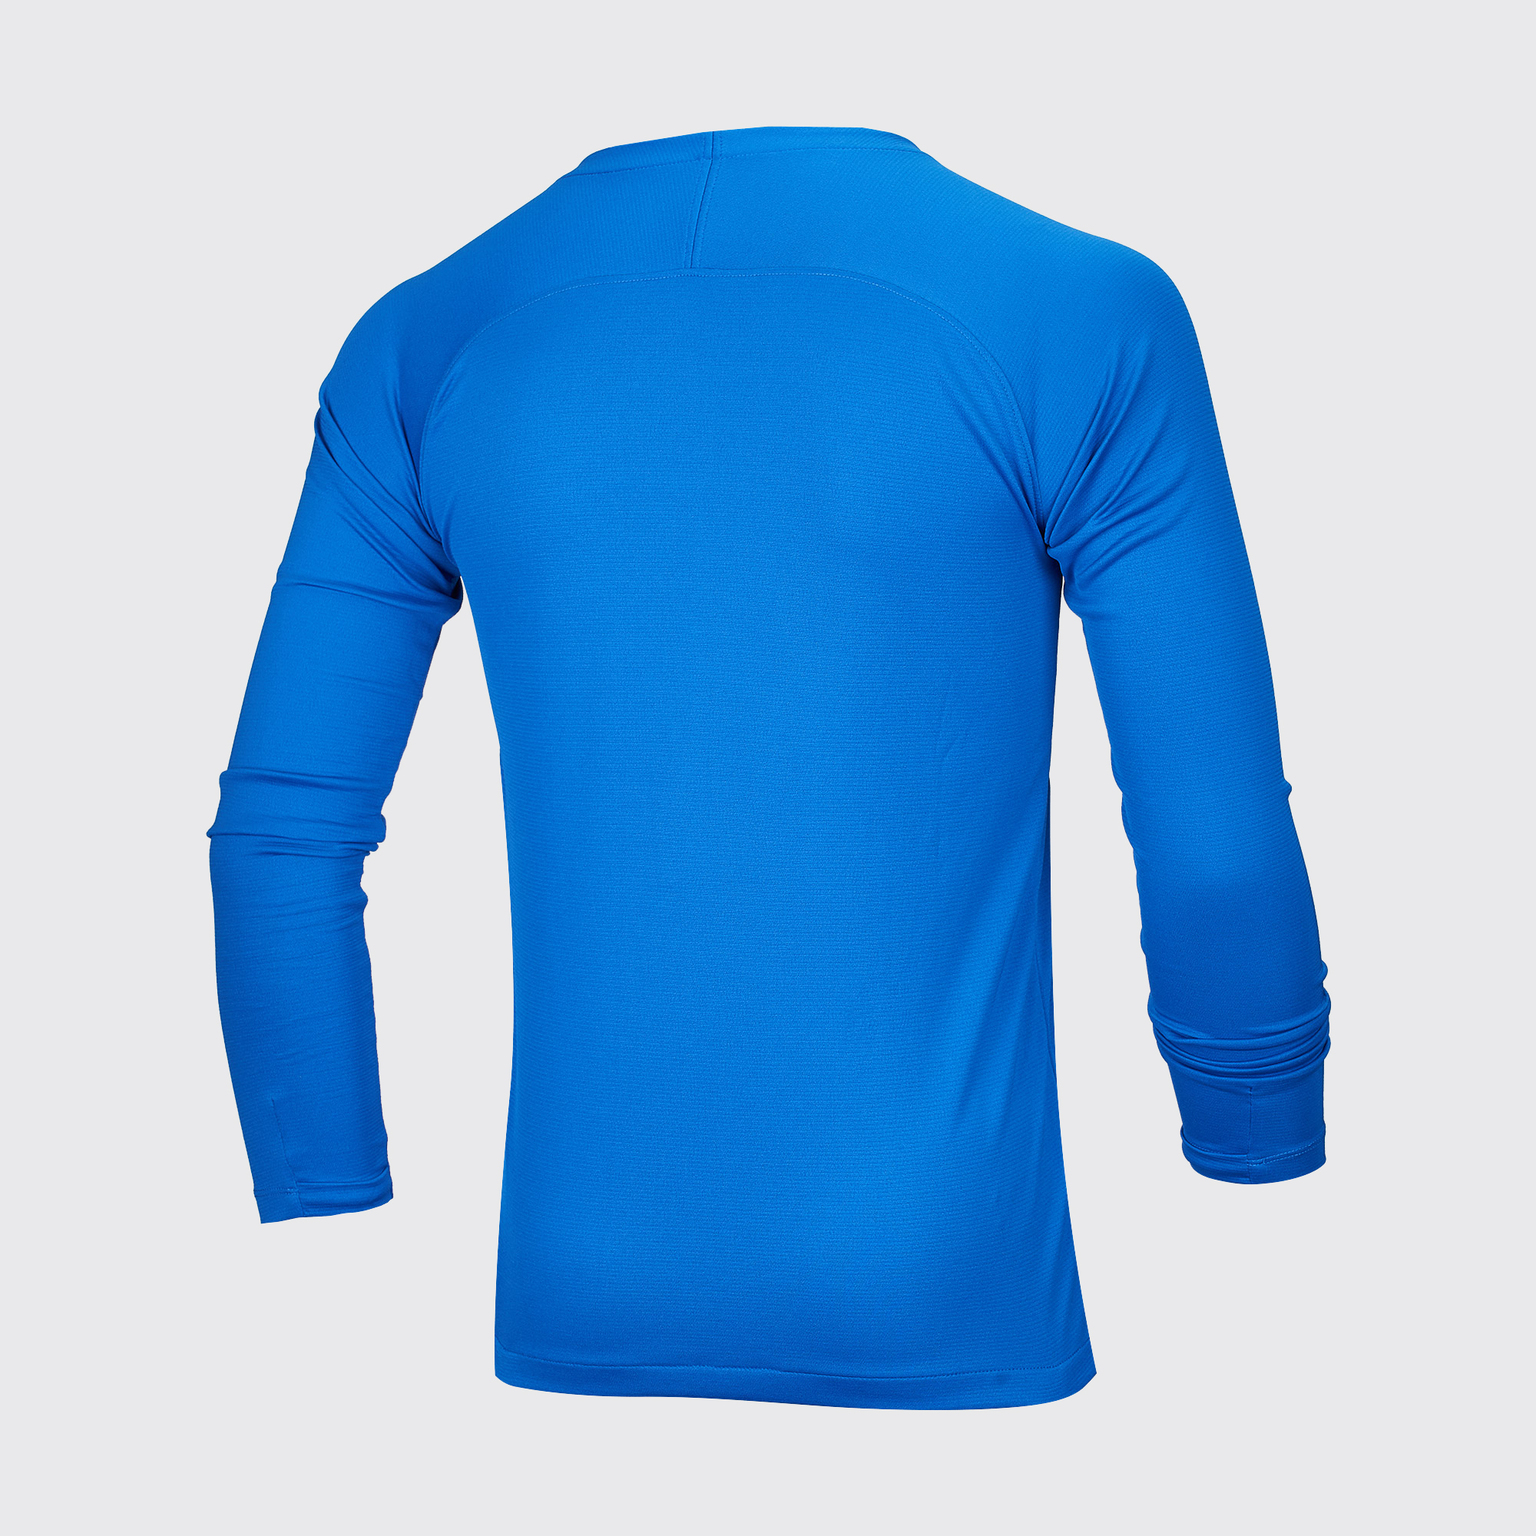 Белье футболка подростковая Nike Dry Park First Layer AV2611-463